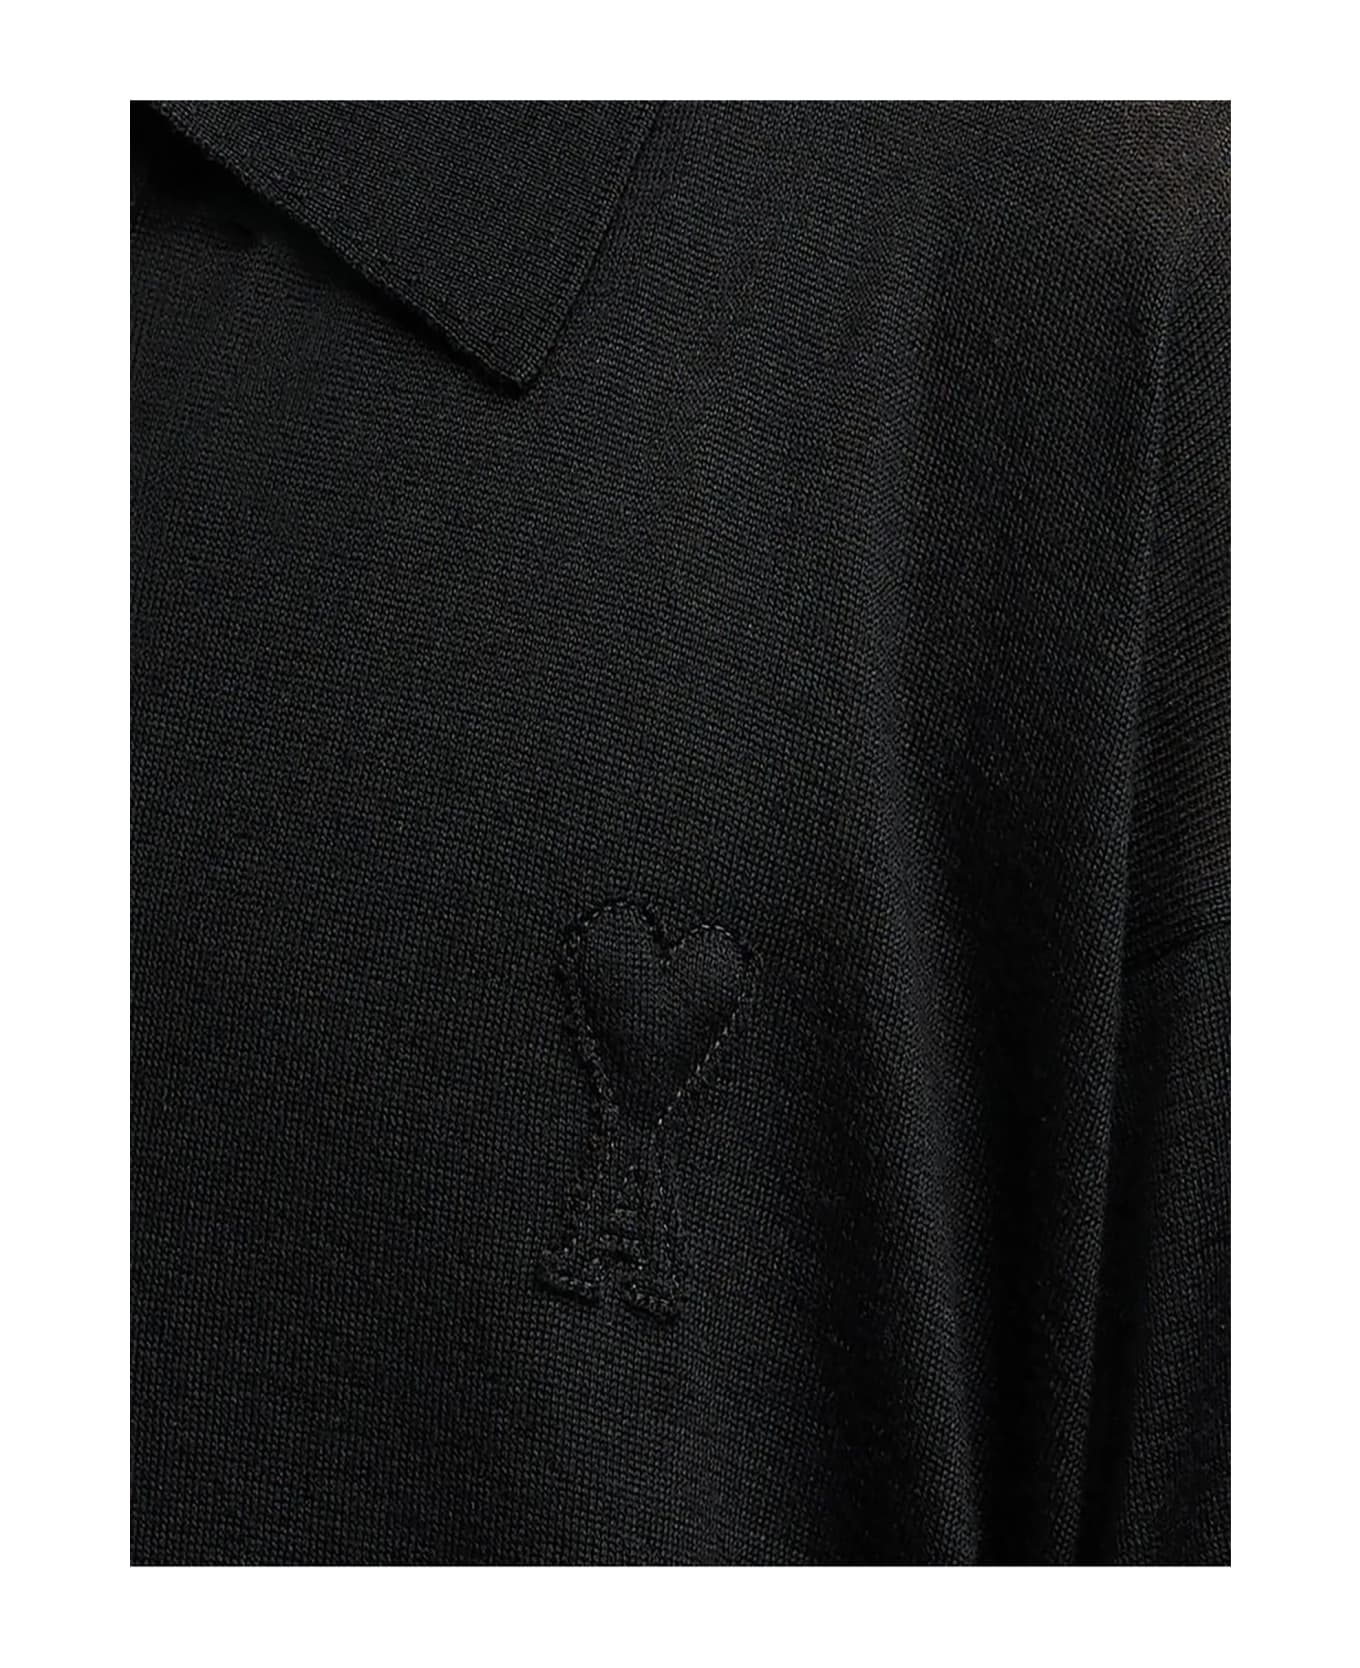 Ami Alexandre Mattiussi Ami Sweaters Black - Black